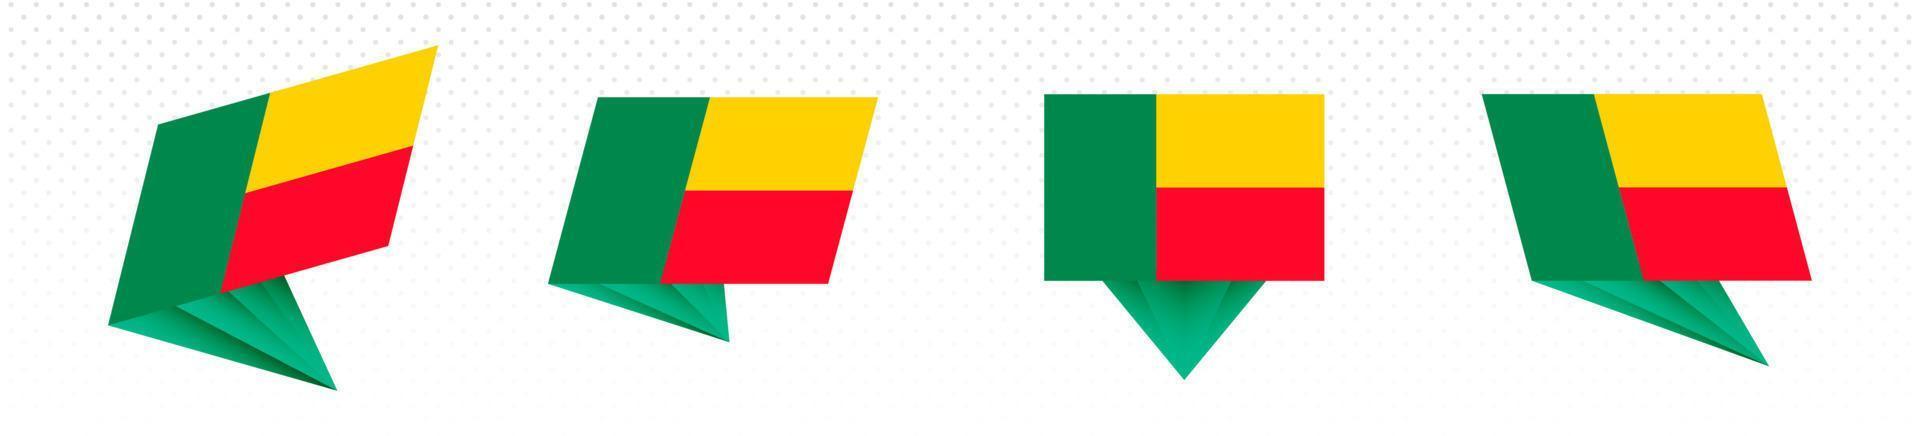 Flag of Benin in modern abstract design, flag set. vector